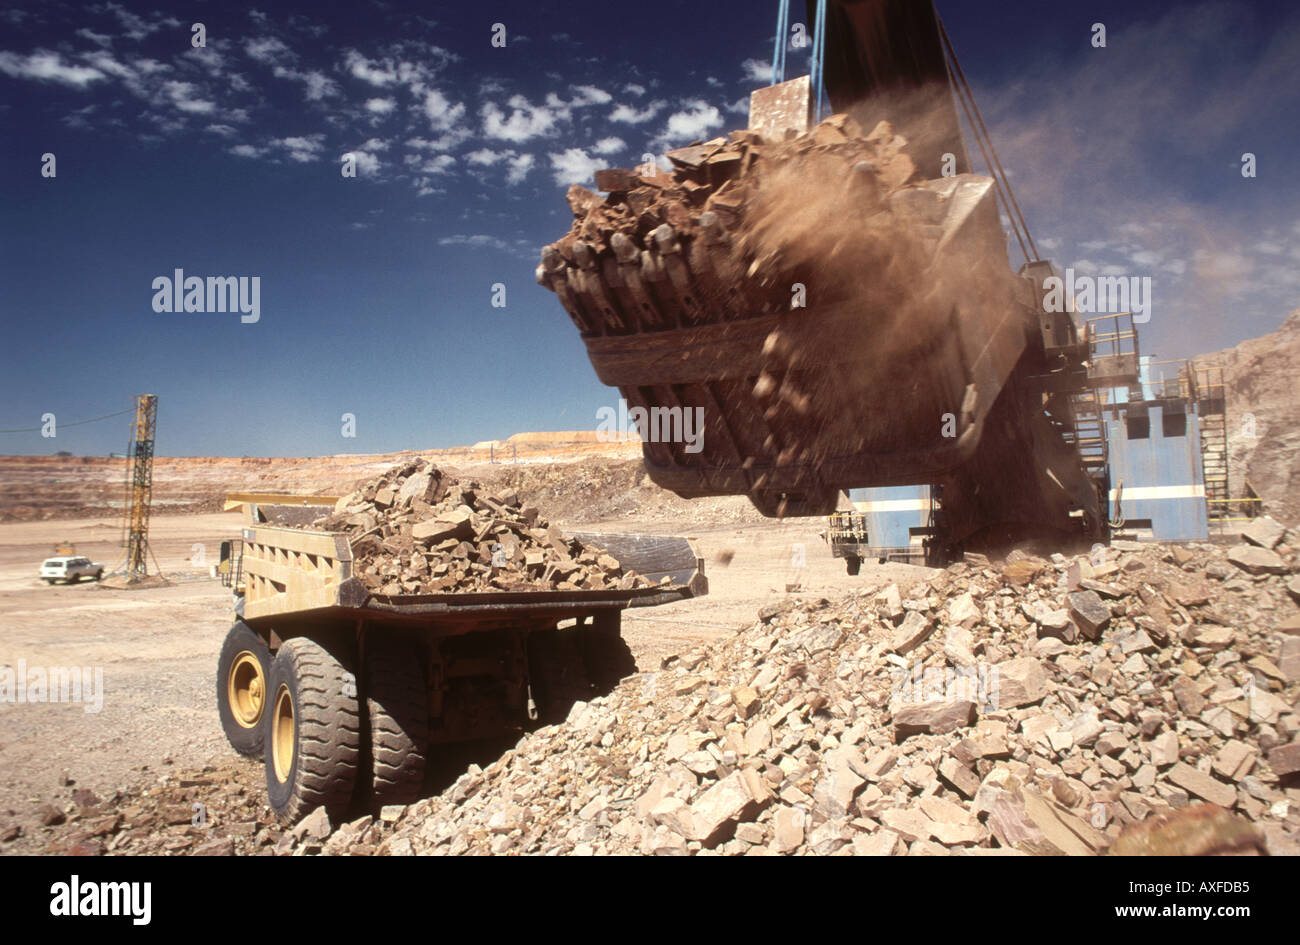 Grand digger rock chargement de minerai et sur un camion dans une mine de diamants à ciel ouvert l'Afrique Botswana Banque D'Images